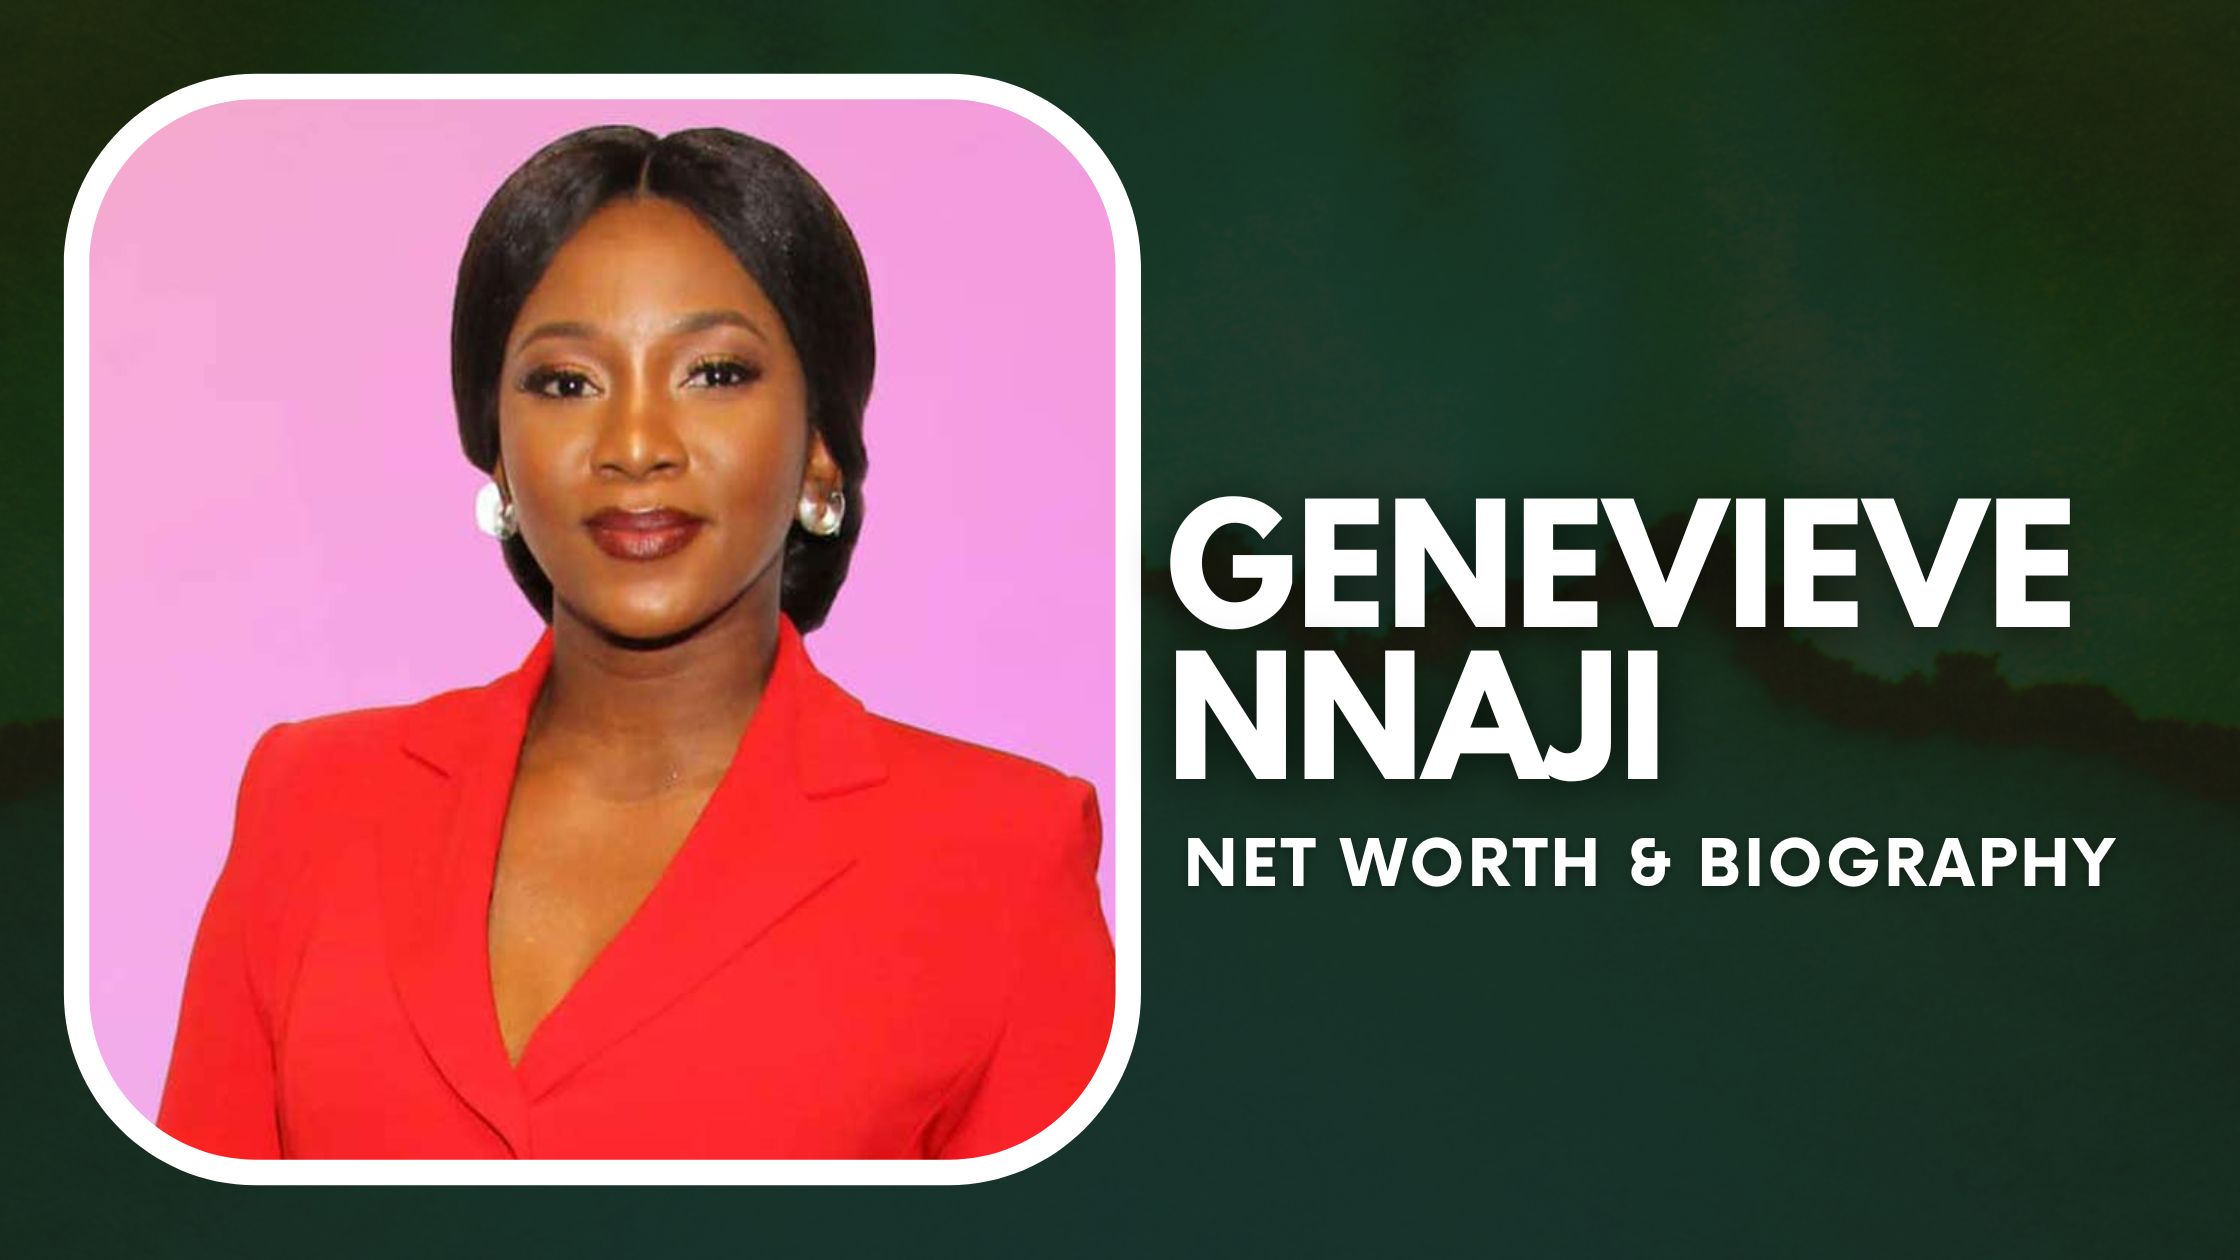 Genevieve Nnaji Biography & Net Worth